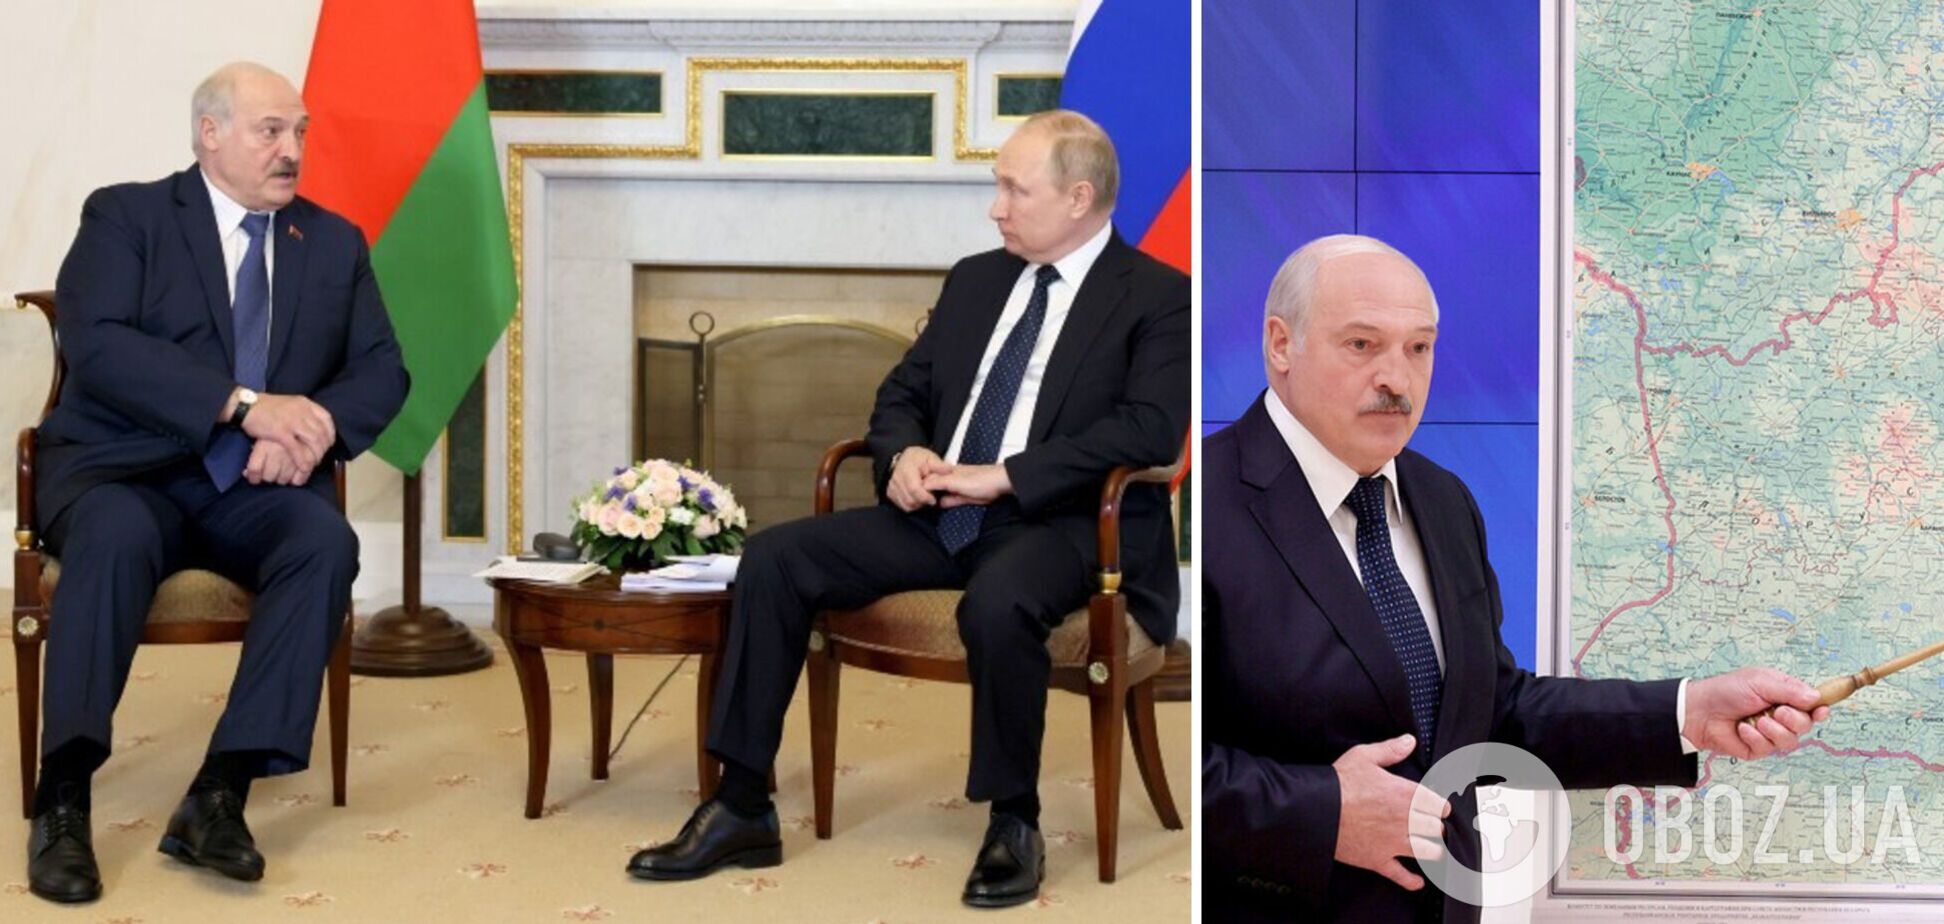 Лукашенко снова приехал к Путину с картой: теперь показывал наступление из Польши. Видео